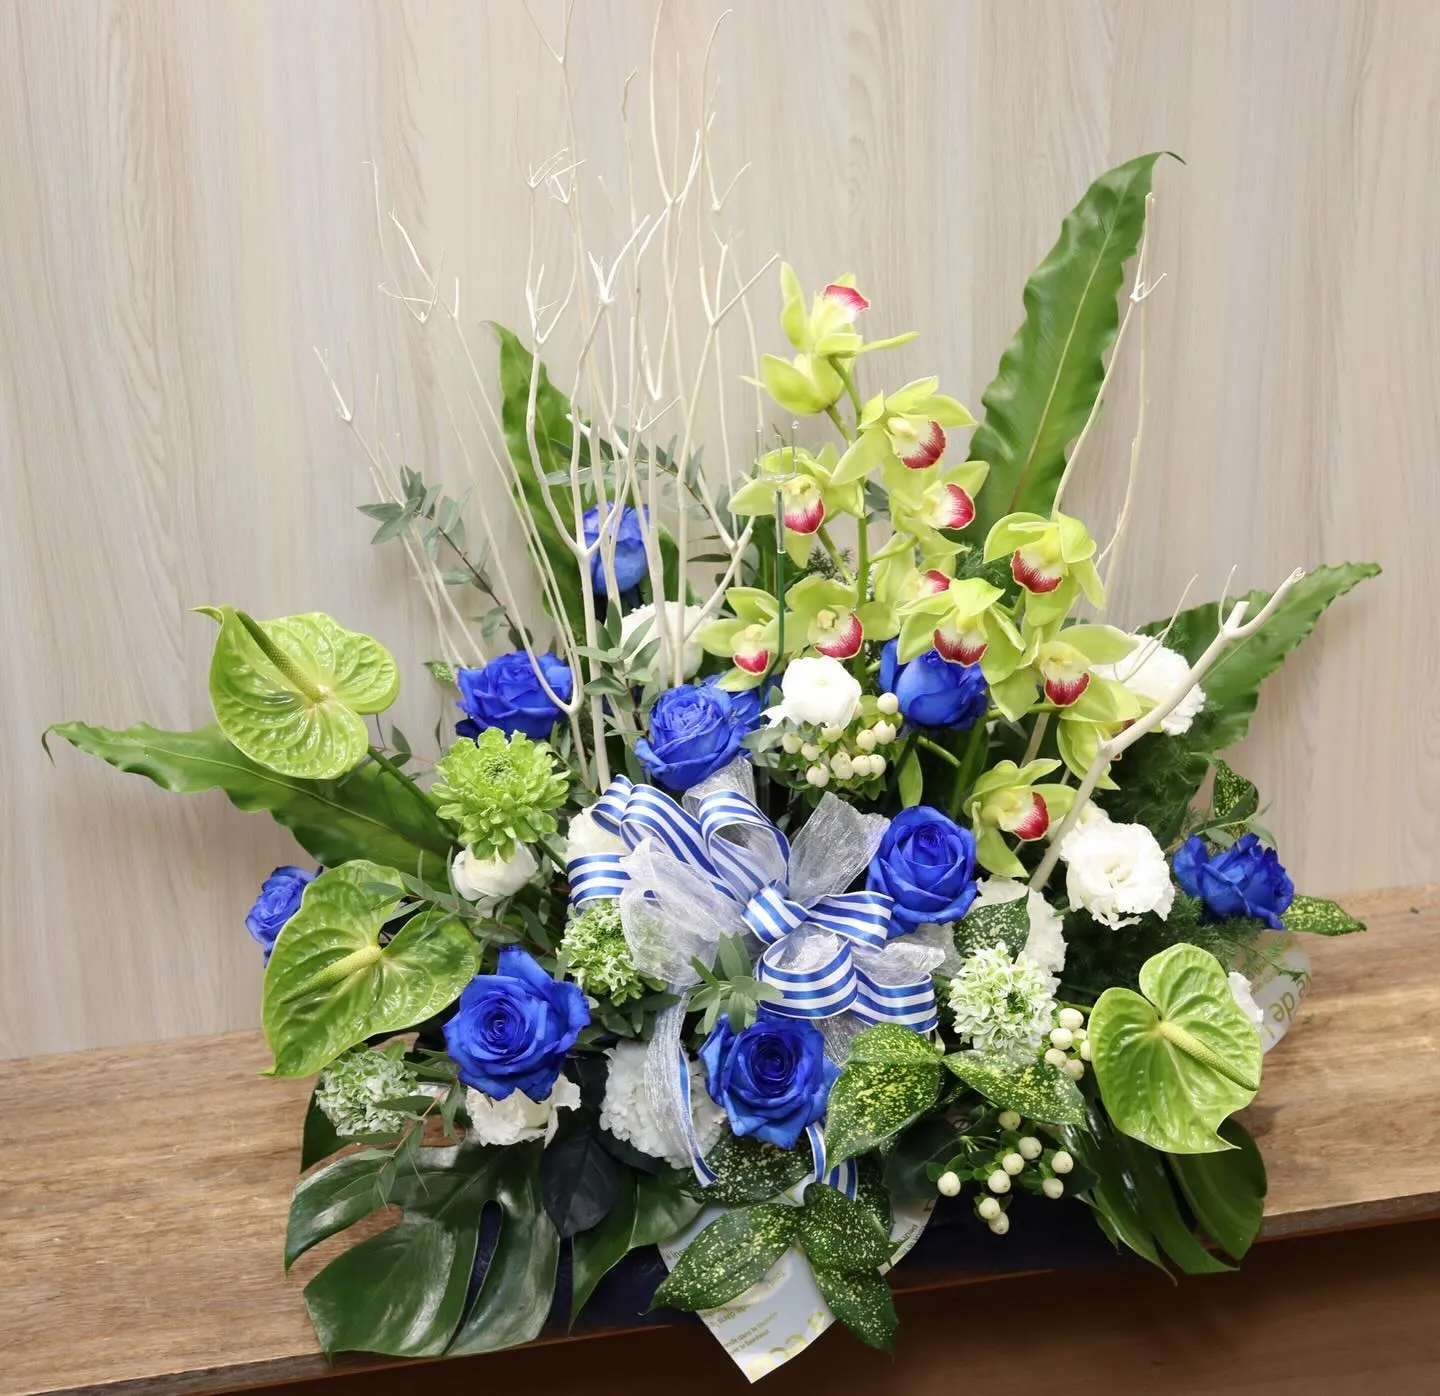 ふじみ野市の美容師さんからお客様の結婚式お祝いで贈られたお花...